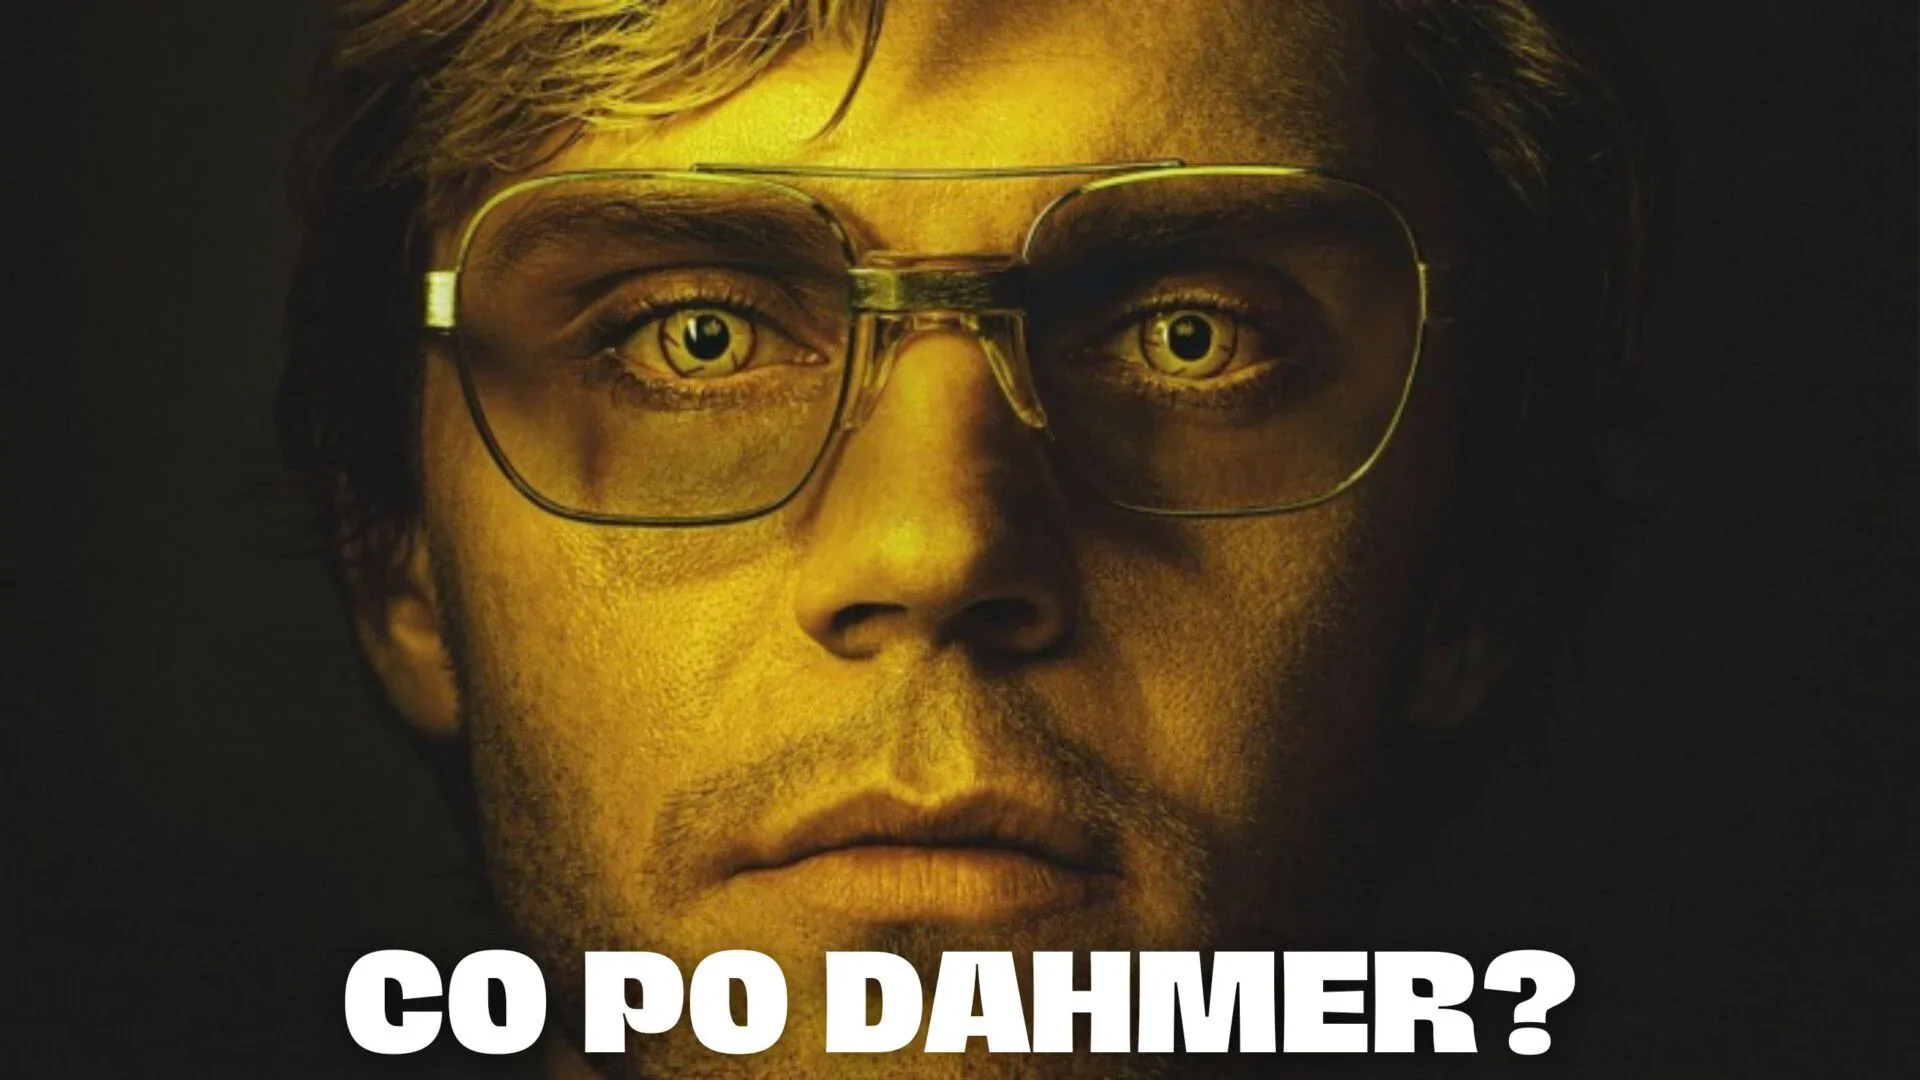 Co obejrzeć po Dahmer - Potwór: Historia Jeffreya Dahmera od Netflix?